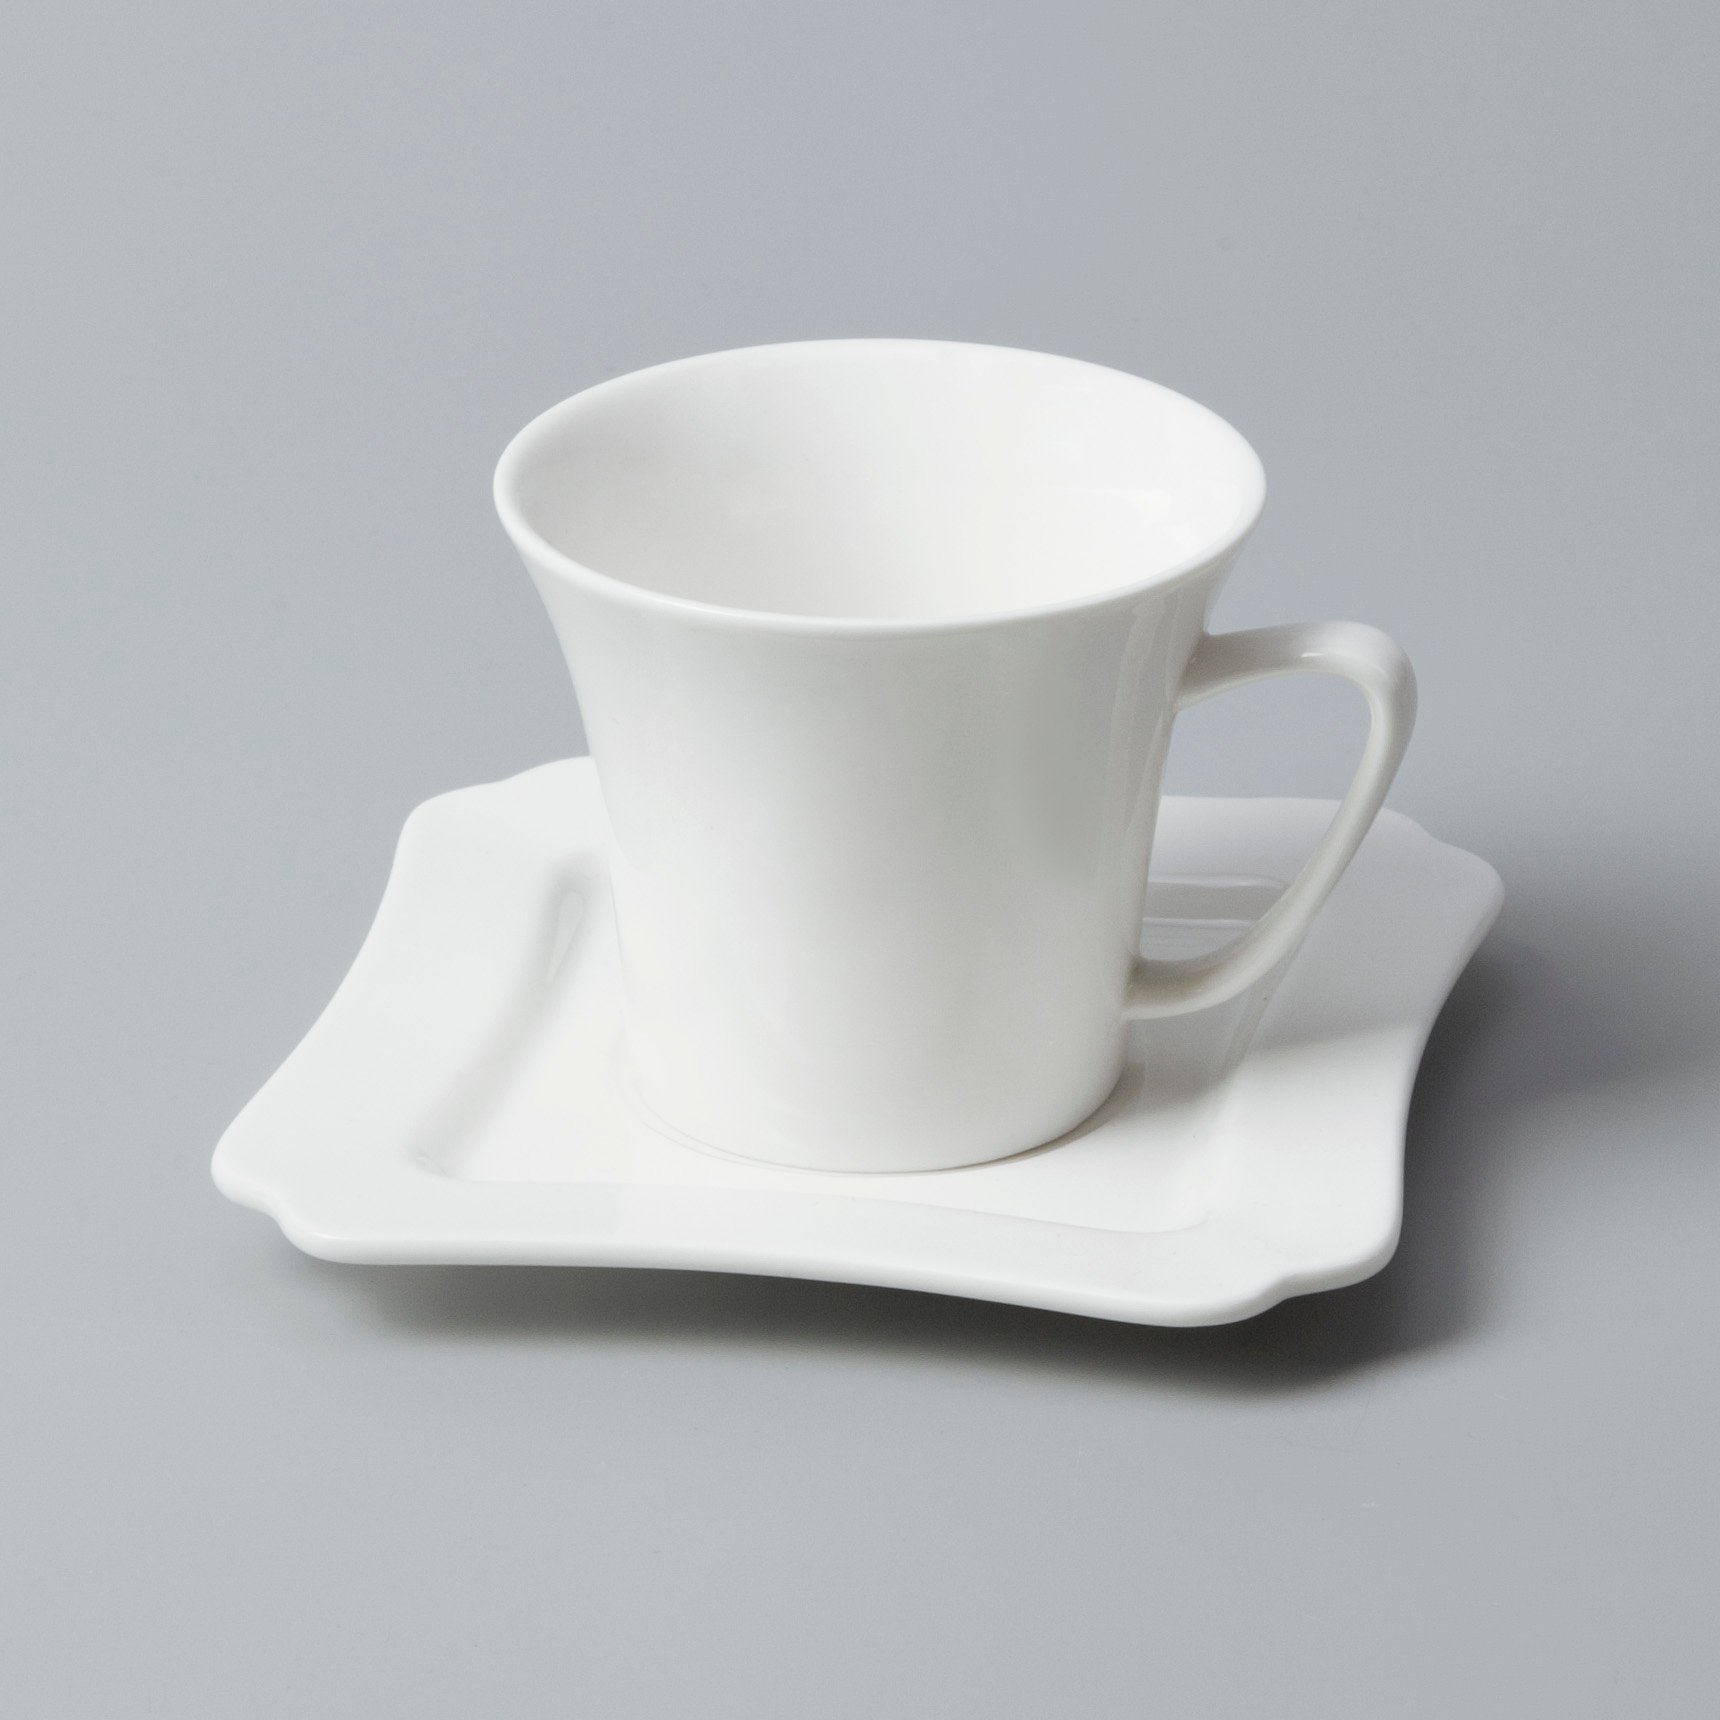 Two Eight irregular restaurant porcelain dinnerware directly sale for dinner-8